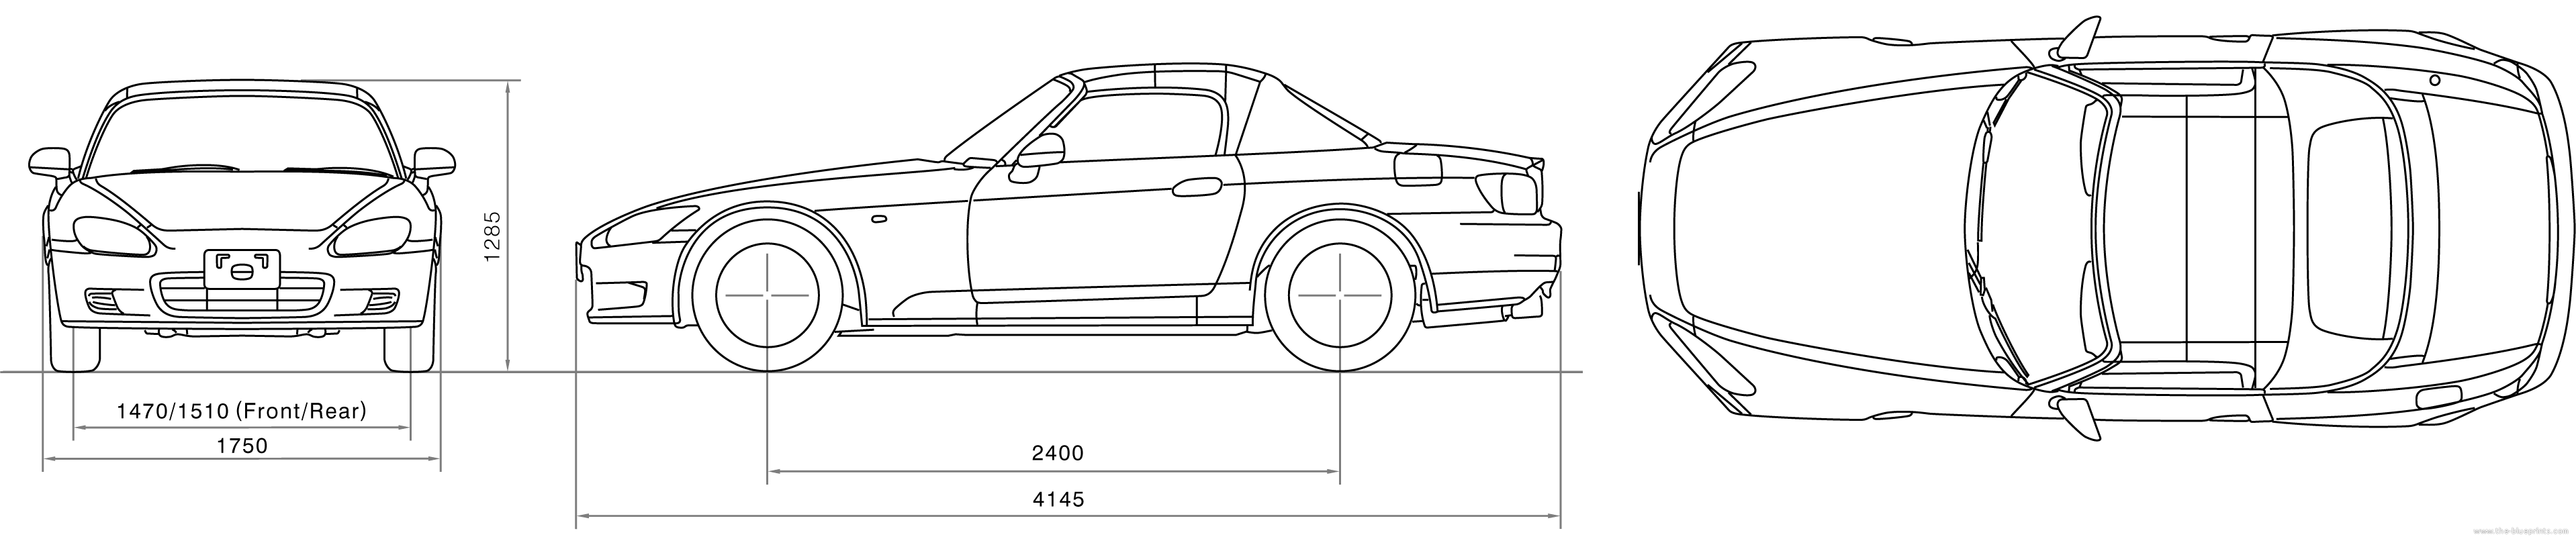 Honda s2000 dimensions #7